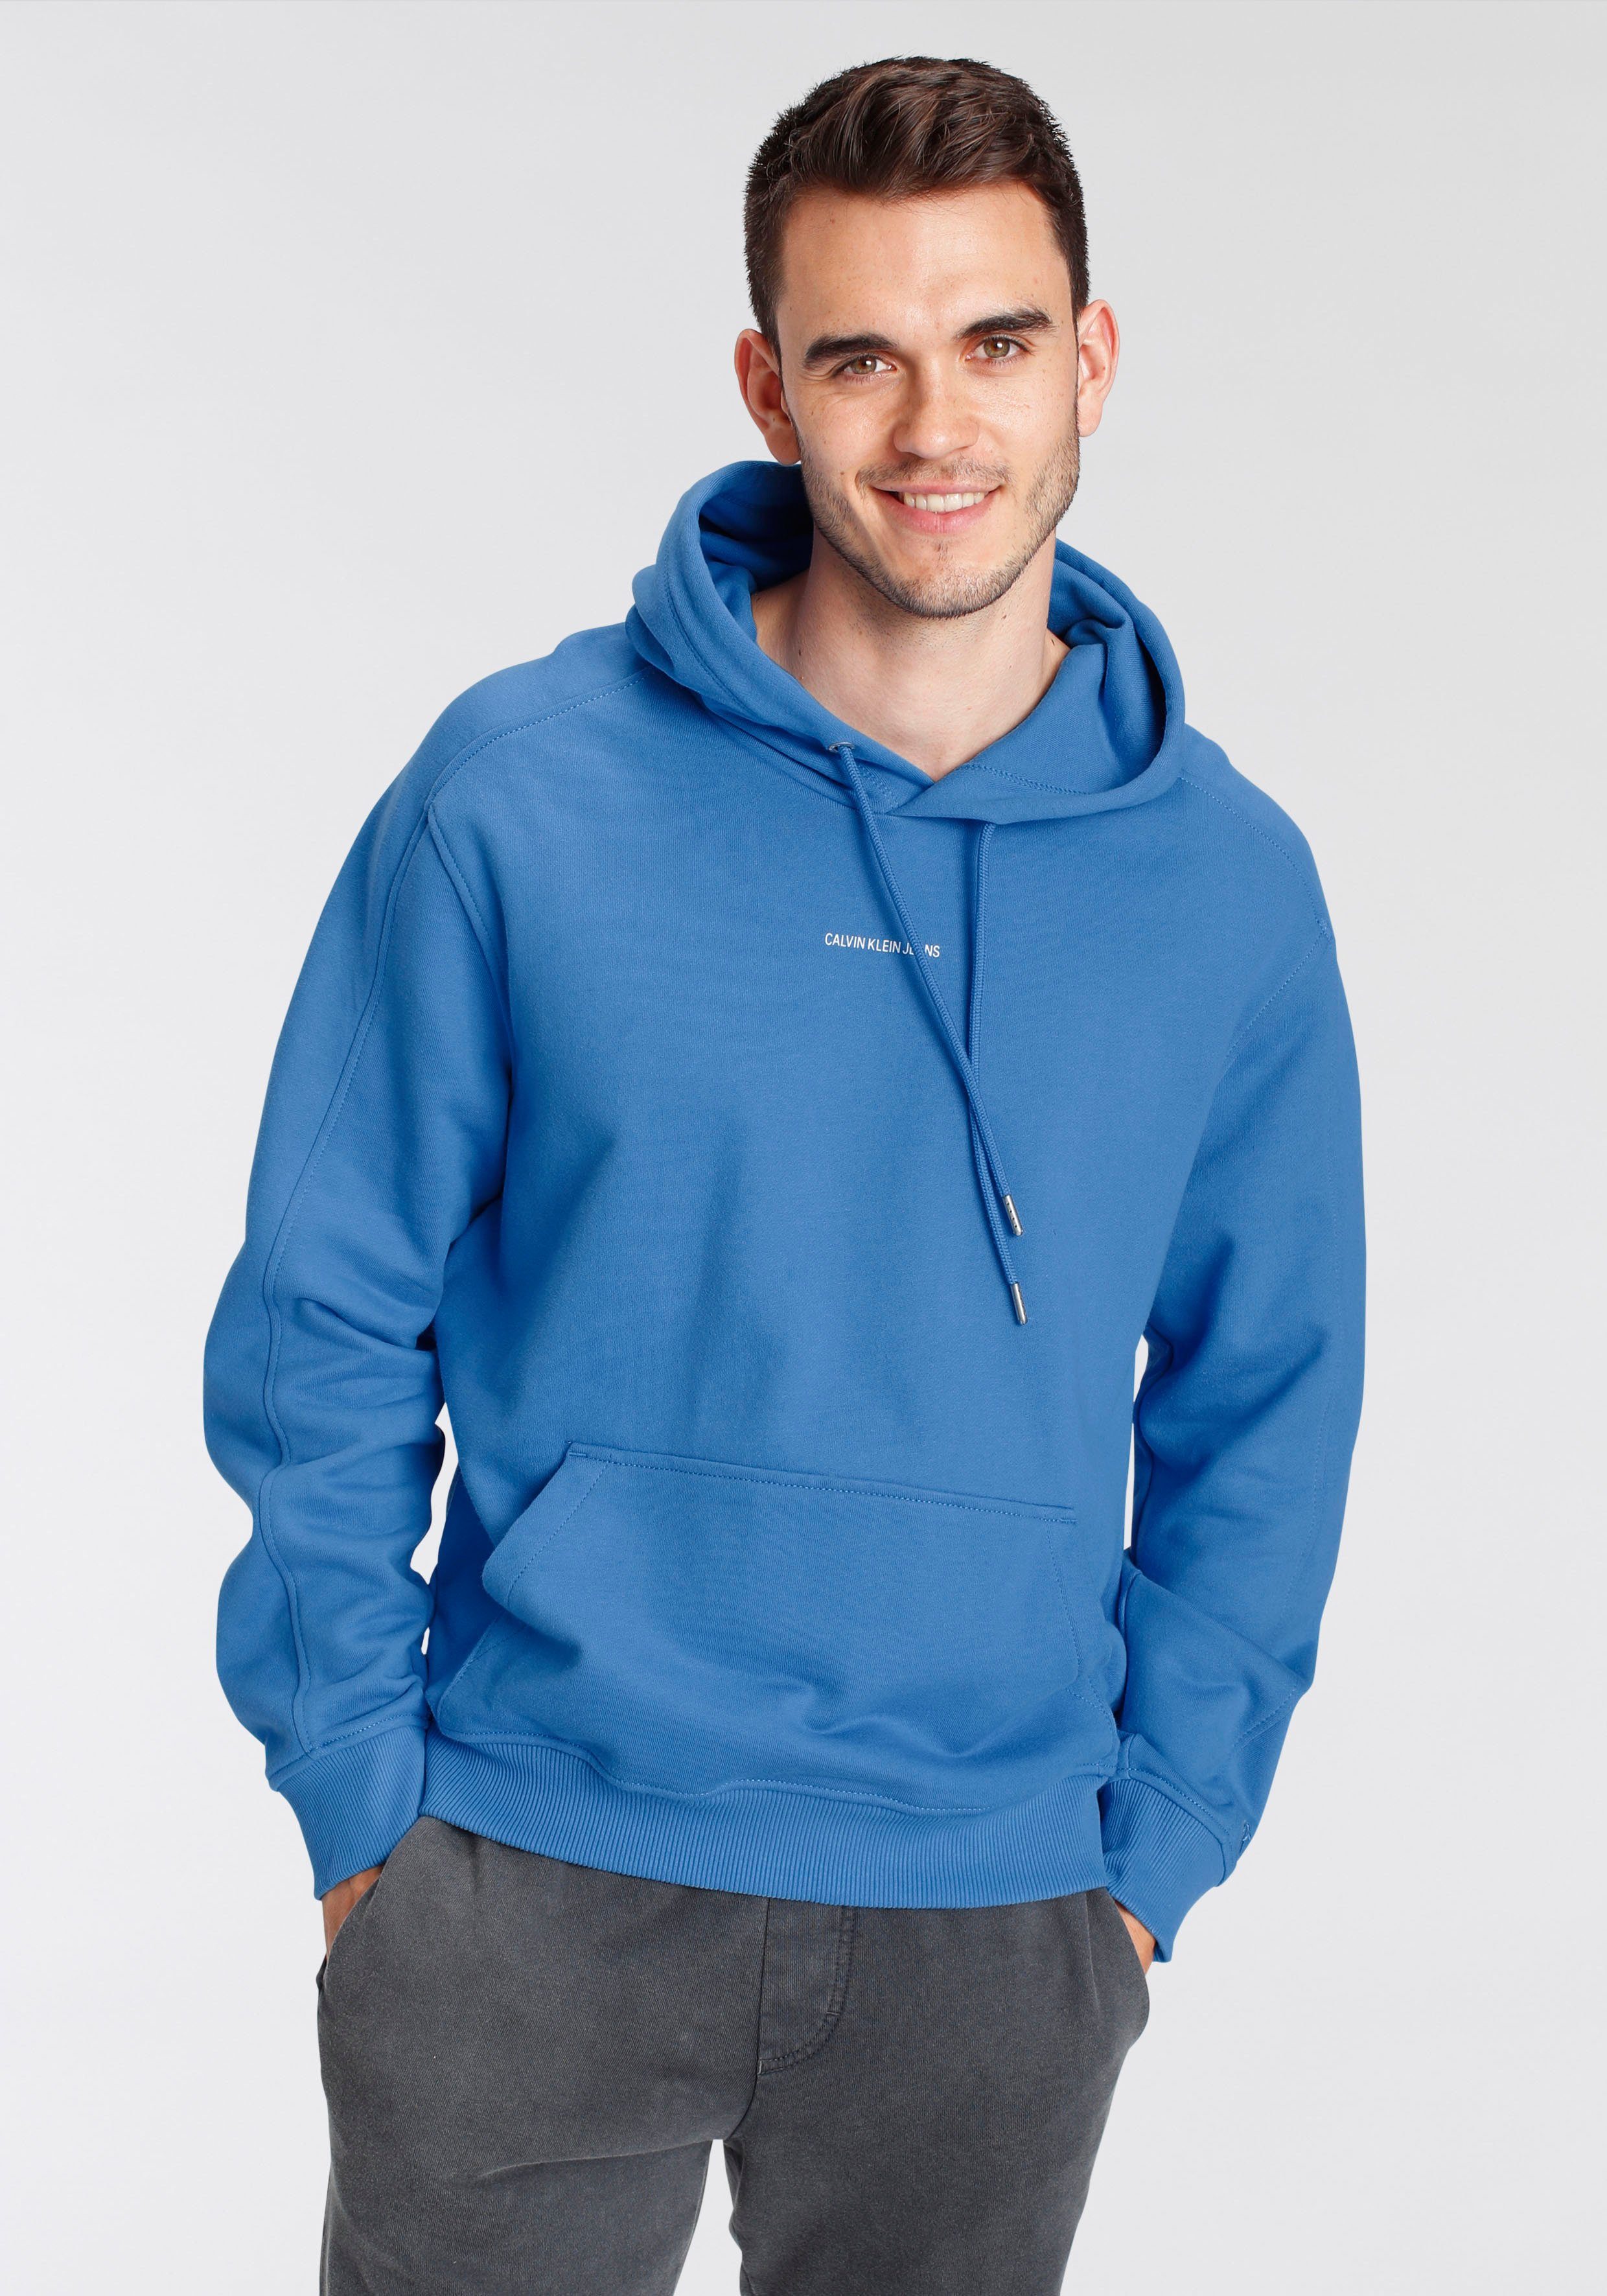 Sweatshirt in blau online kaufen | OTTO